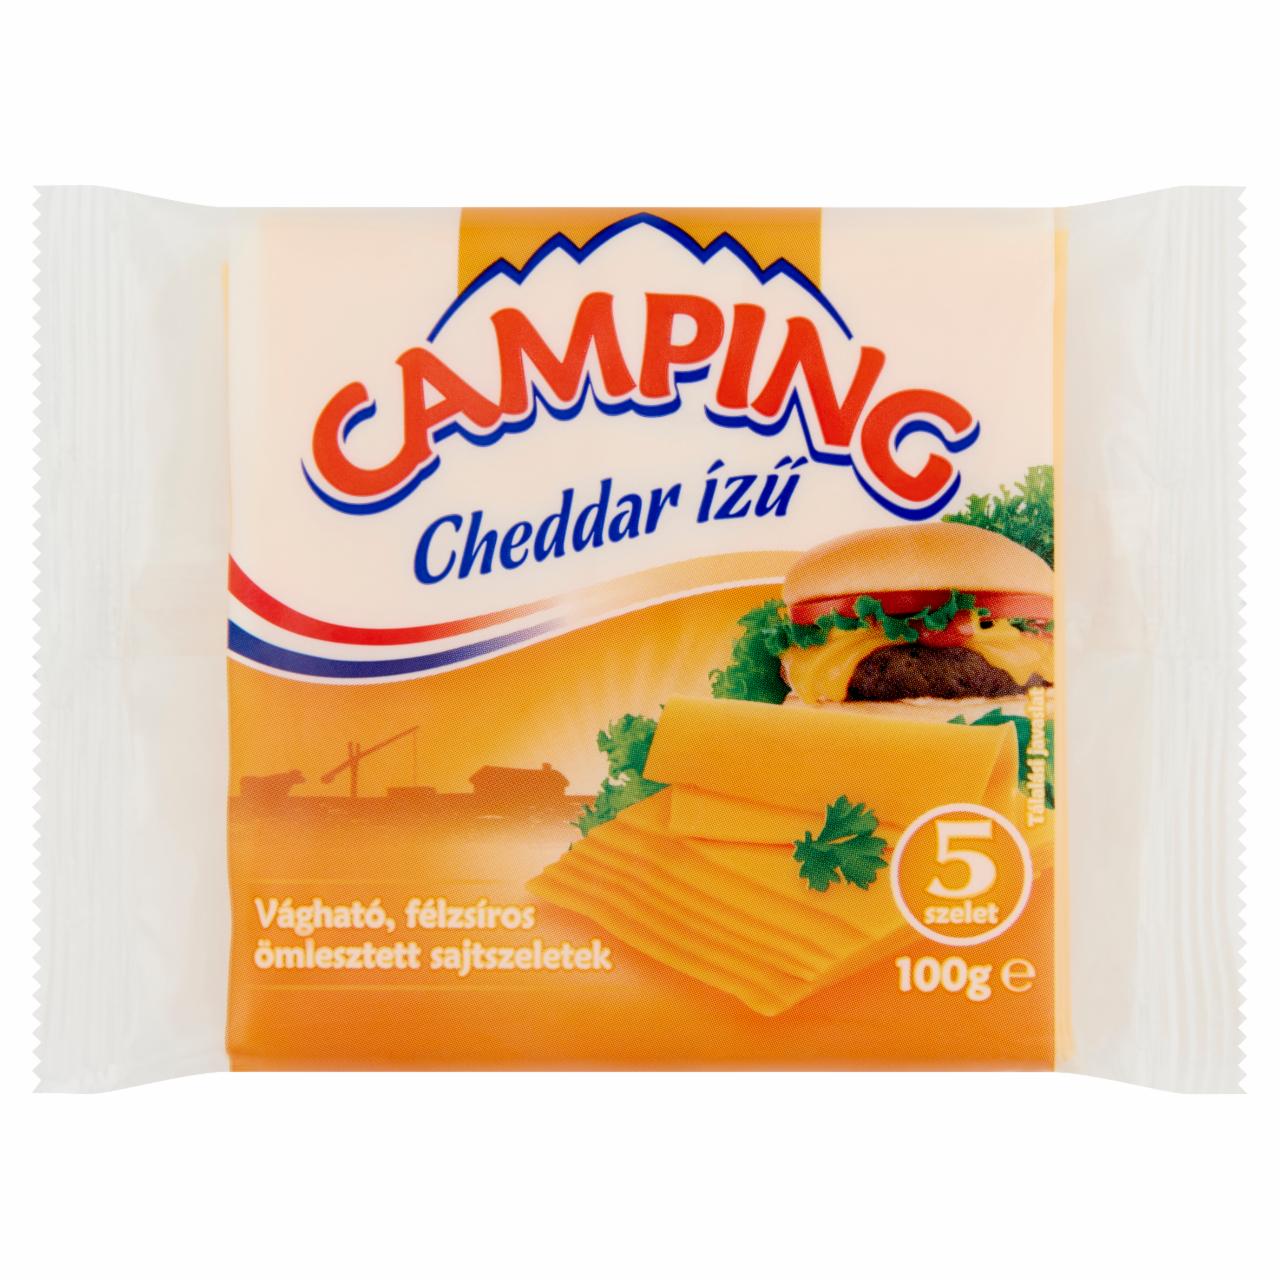 Képek - Camping Cheddar ízű vágható, félzsíros ömlesztett sajtszeletek 5 db 100 g